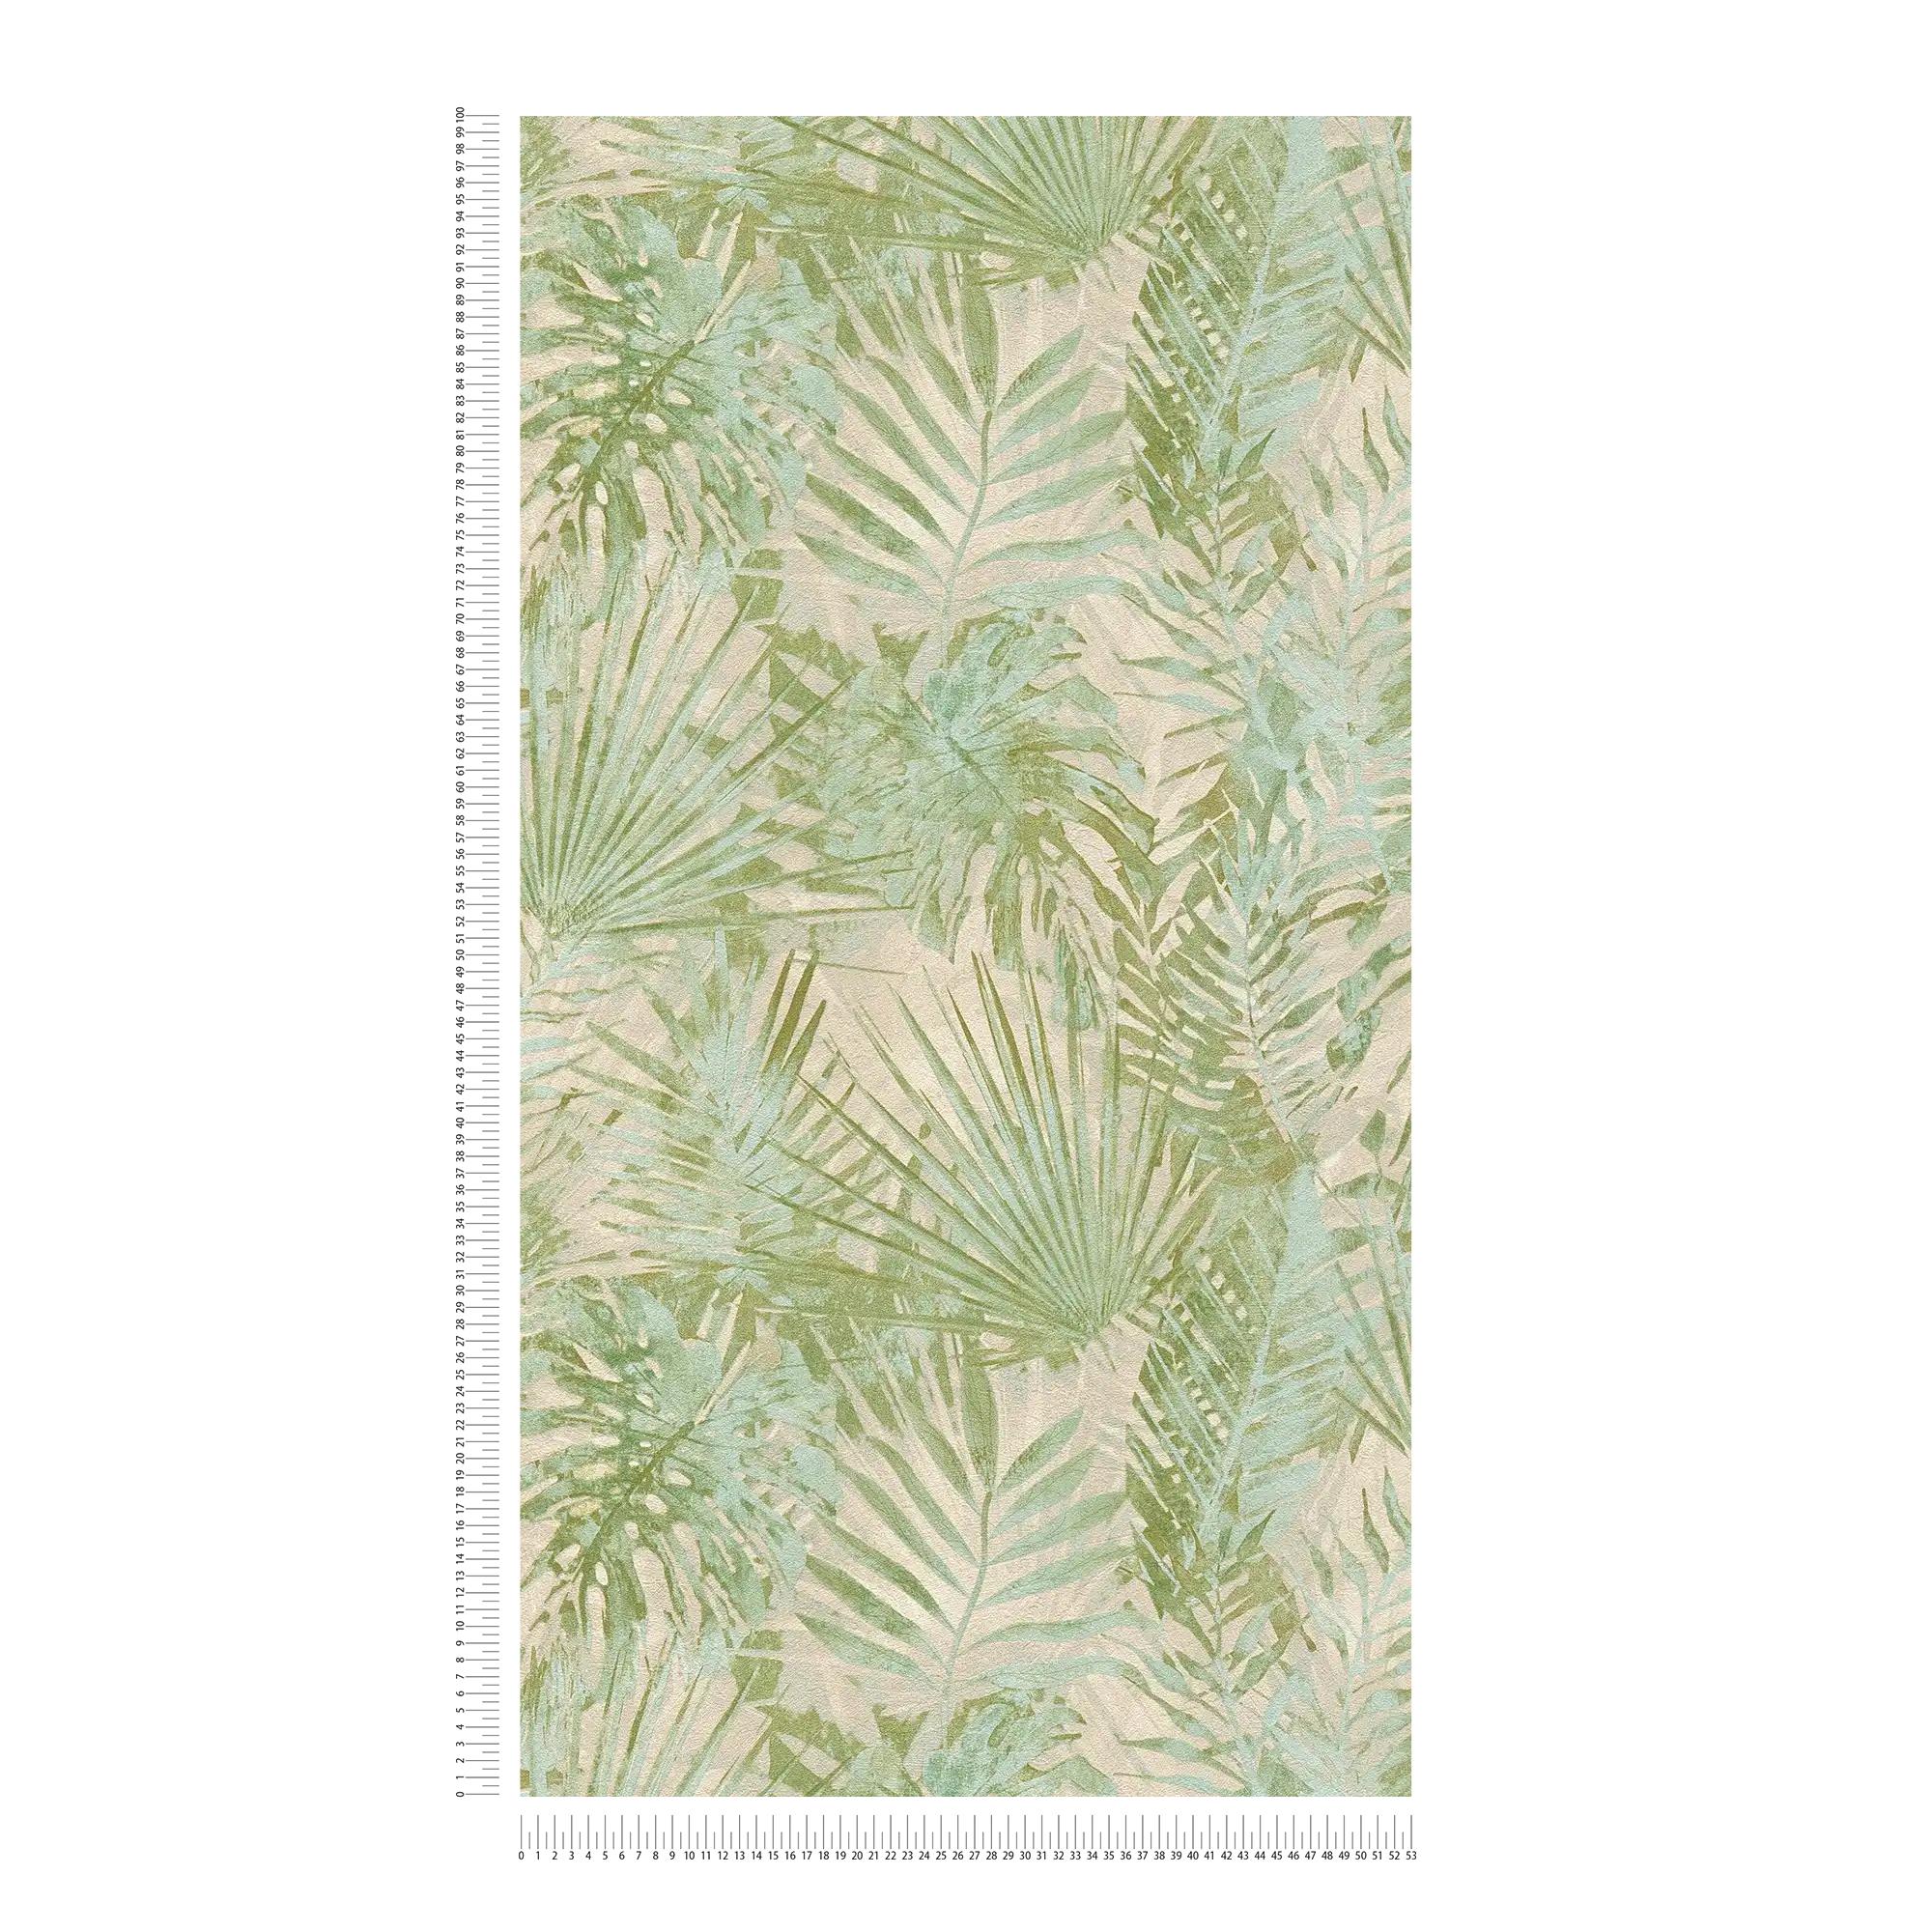             Vliesbehang met jungle bladeren PVC-vrij - groen, beige
        